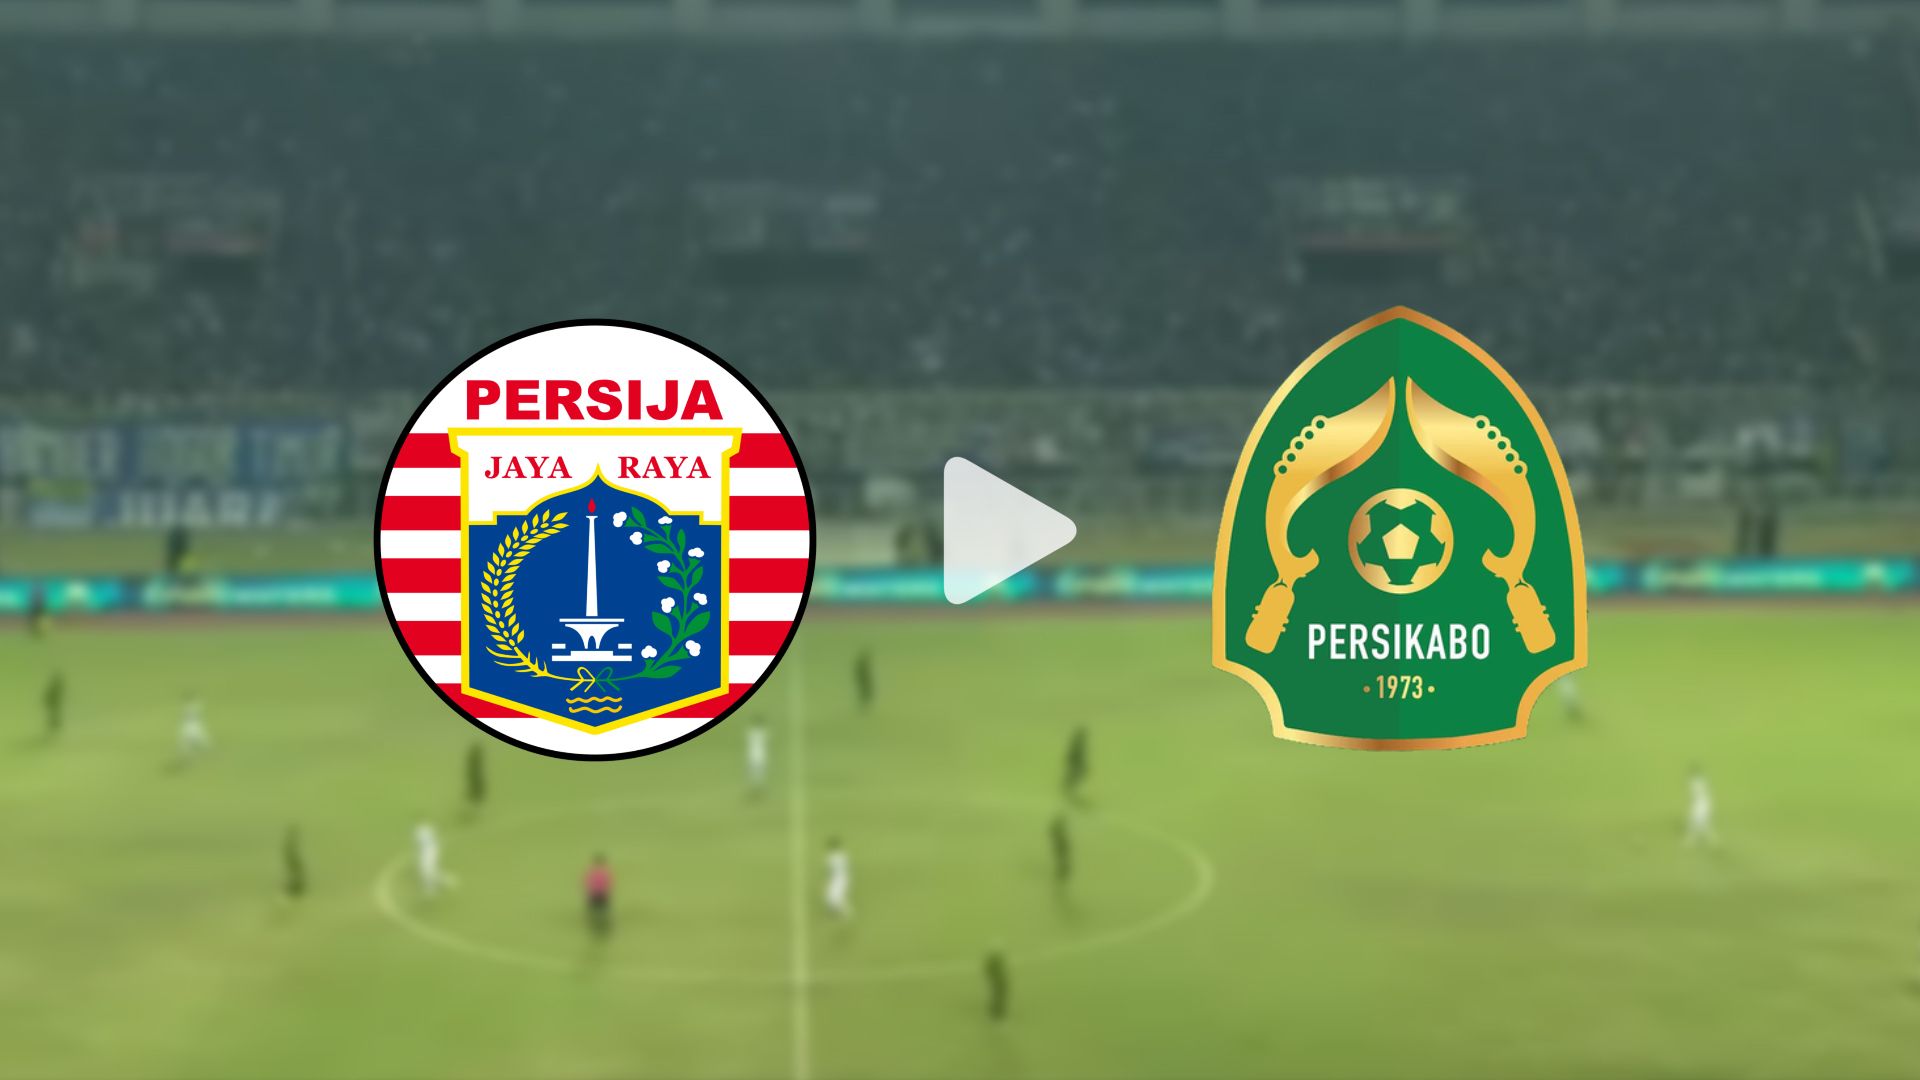 Ini 2 link live streaming Persija vs Persikabo 1973 di Indosiar, nonton gratis siaran langsung hari ini, 29 Januari 2023 pukul 15:30 WIB.